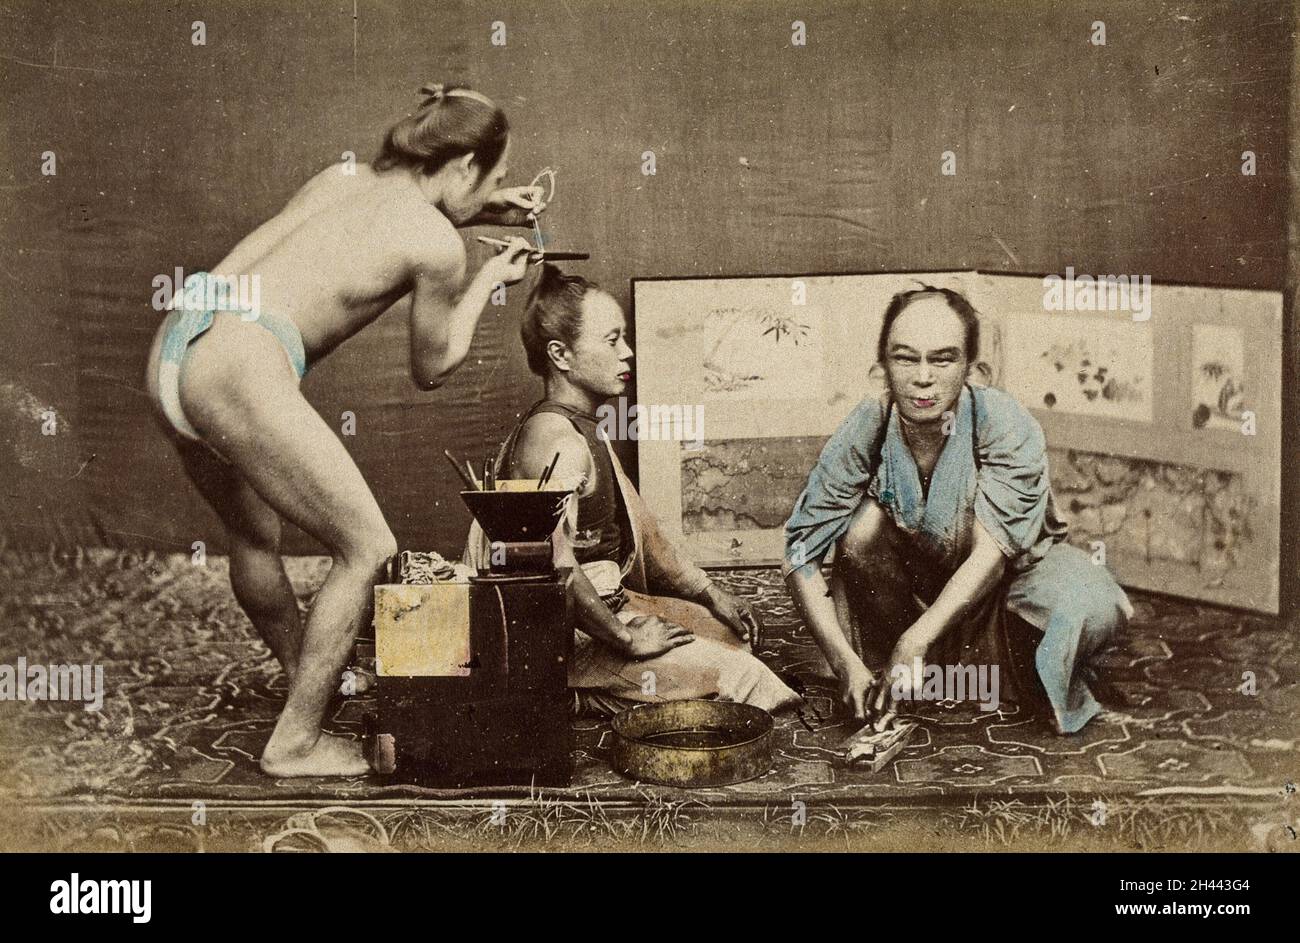 Japan: Ein Friseur mit Lendenschurz bei der Arbeit an einem knieenden Mann; ein Mann in einer Robe hockt vor ihm. Farbfoto, 1870/1890. Stockfoto